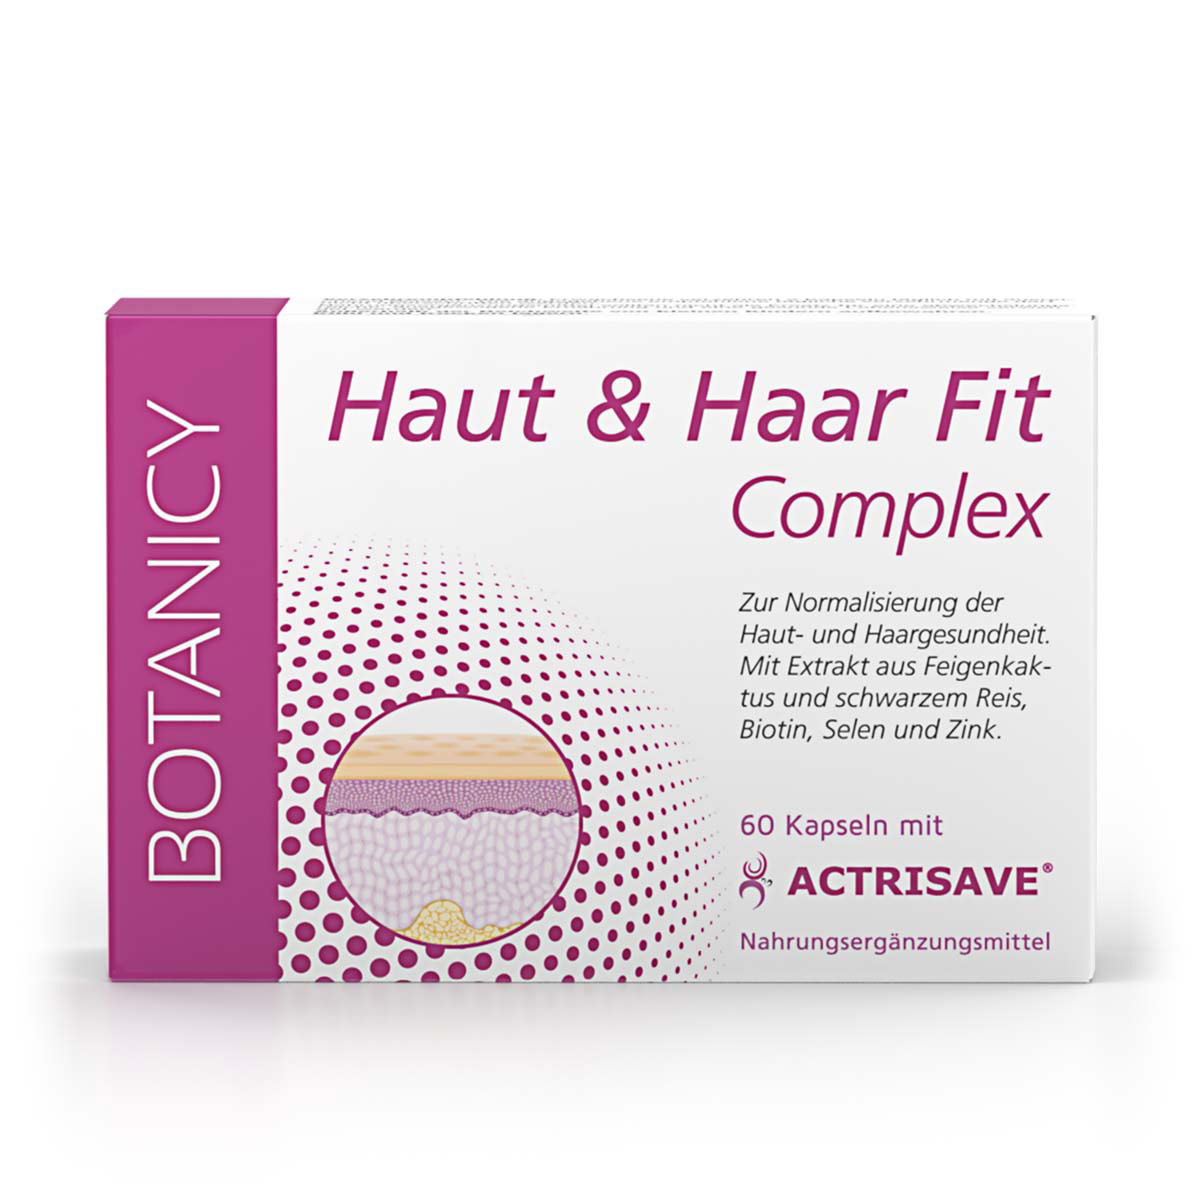 HAUT & HAAR FIT Complex mit Actrisave®